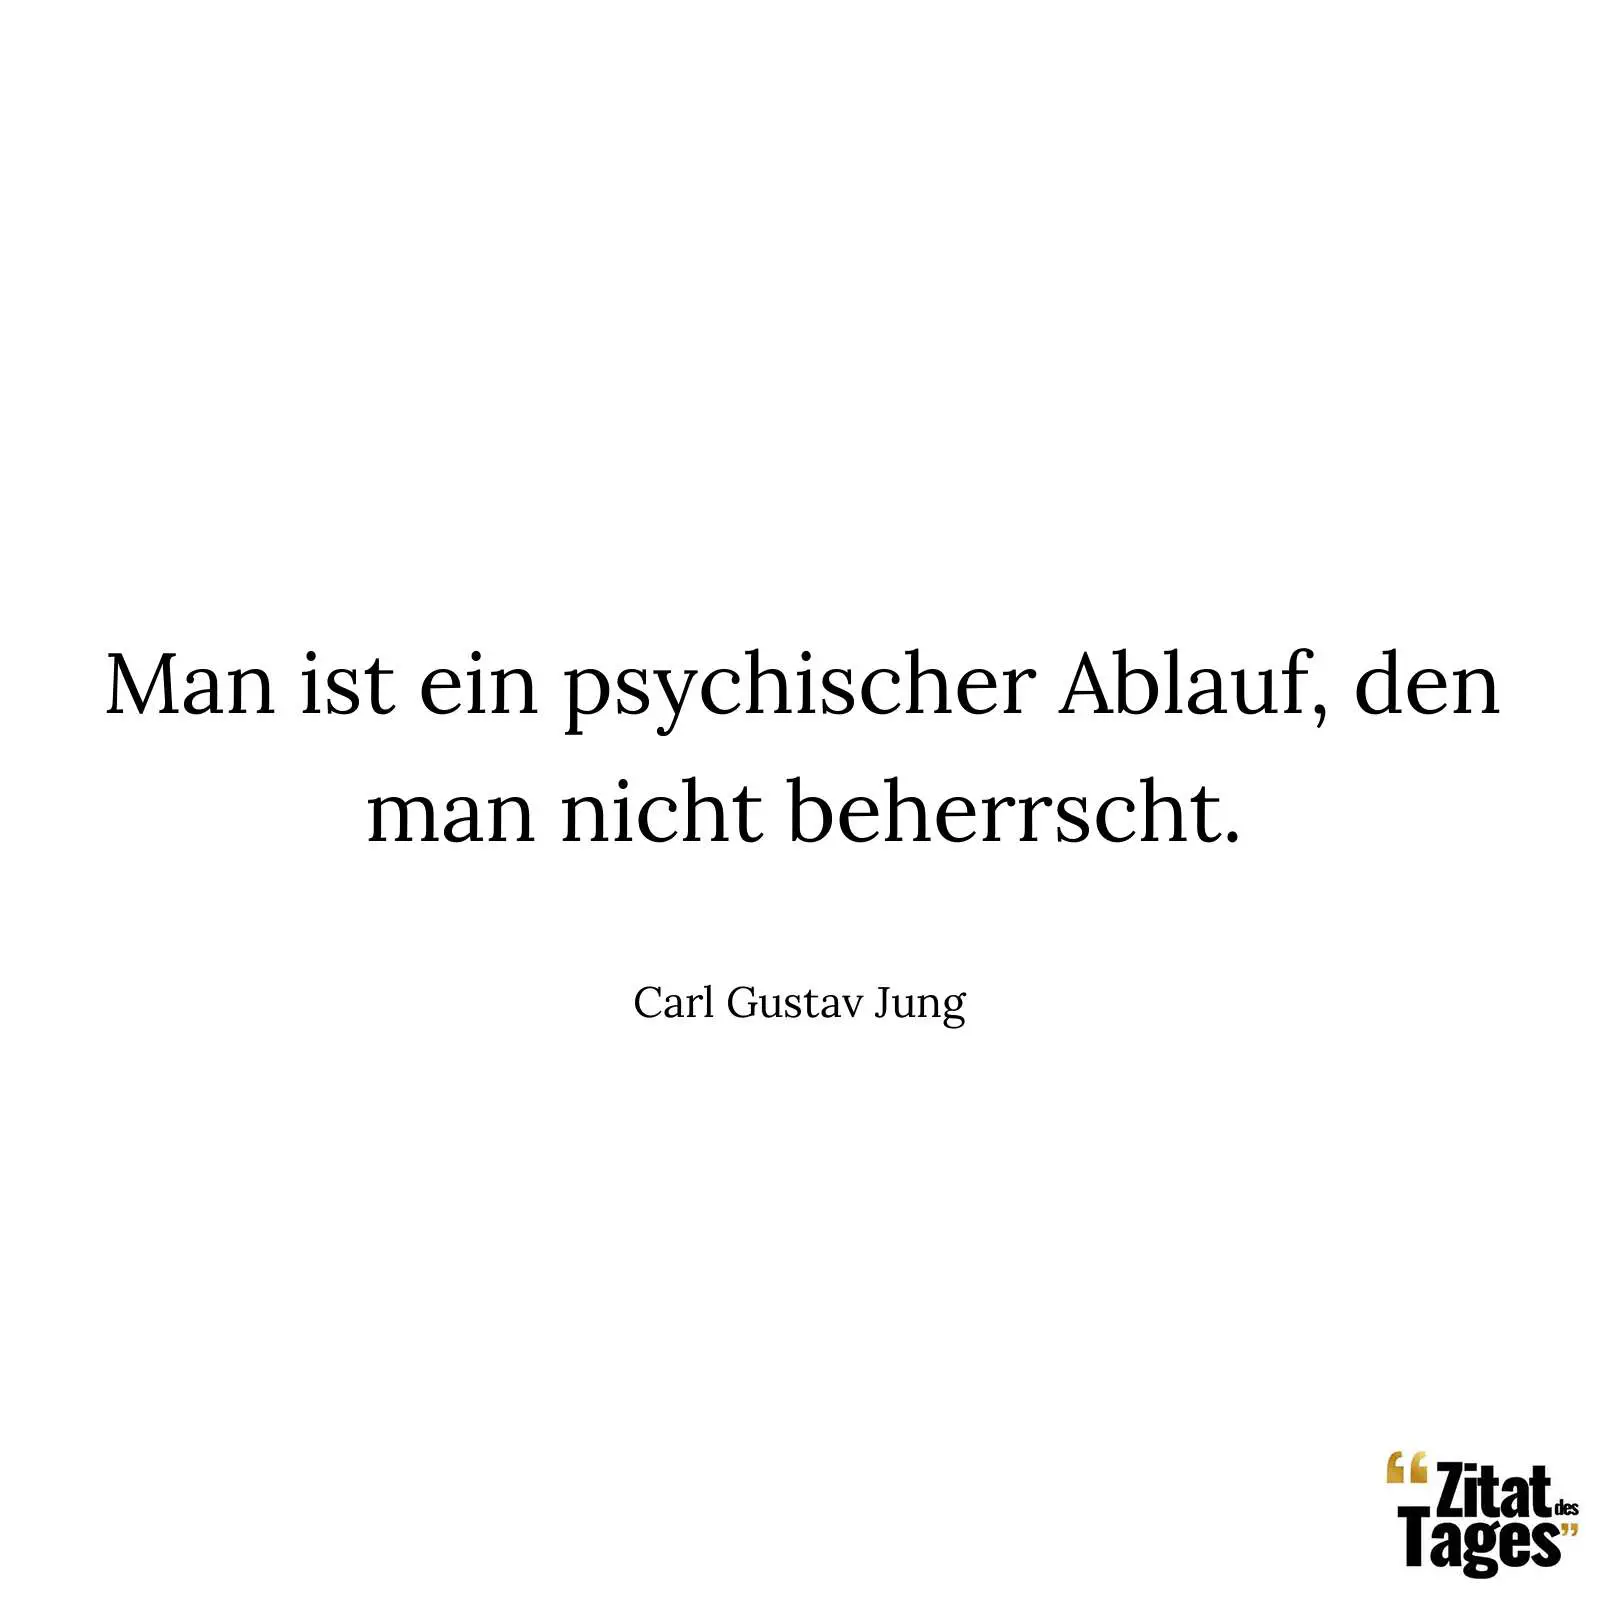 Man ist ein psychischer Ablauf, den man nicht beherrscht. - Carl Gustav Jung